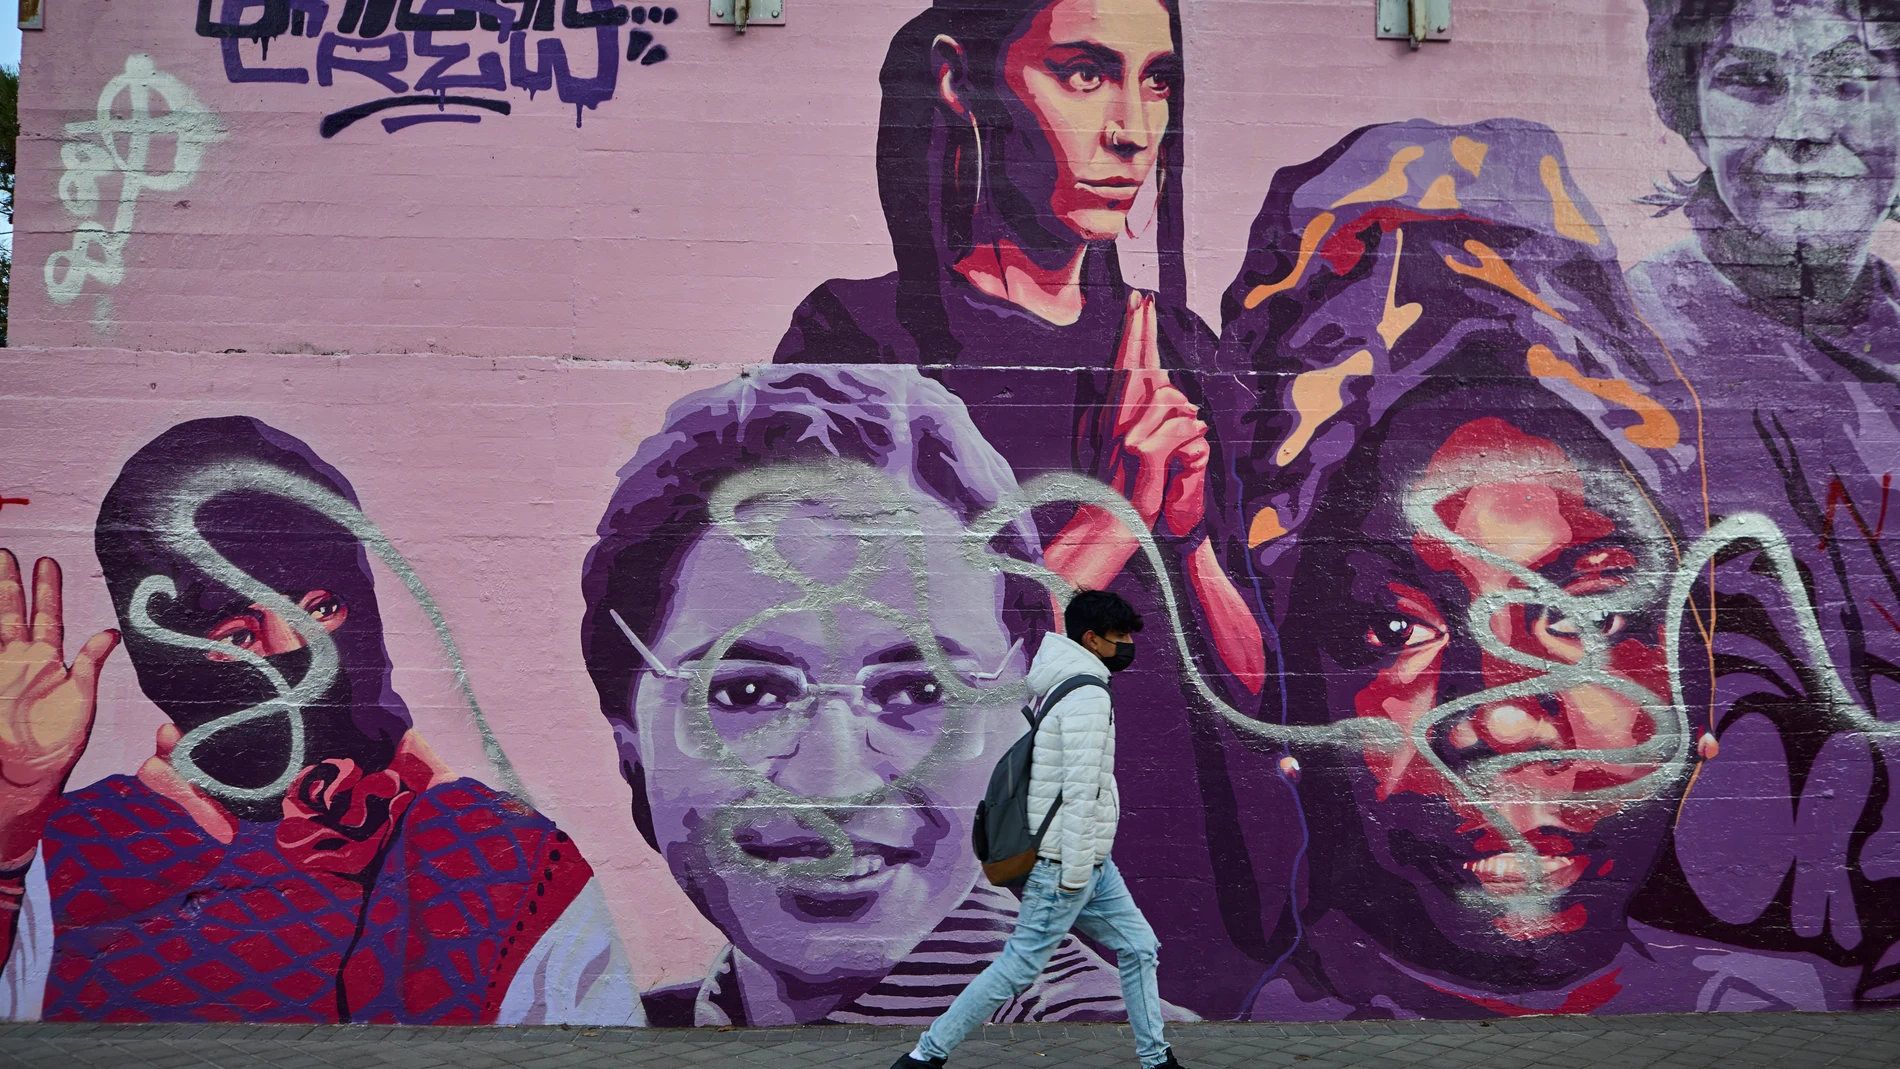 El mural feminista de Ciudad Lineal ha sido vandalizado con pintadas otra vez